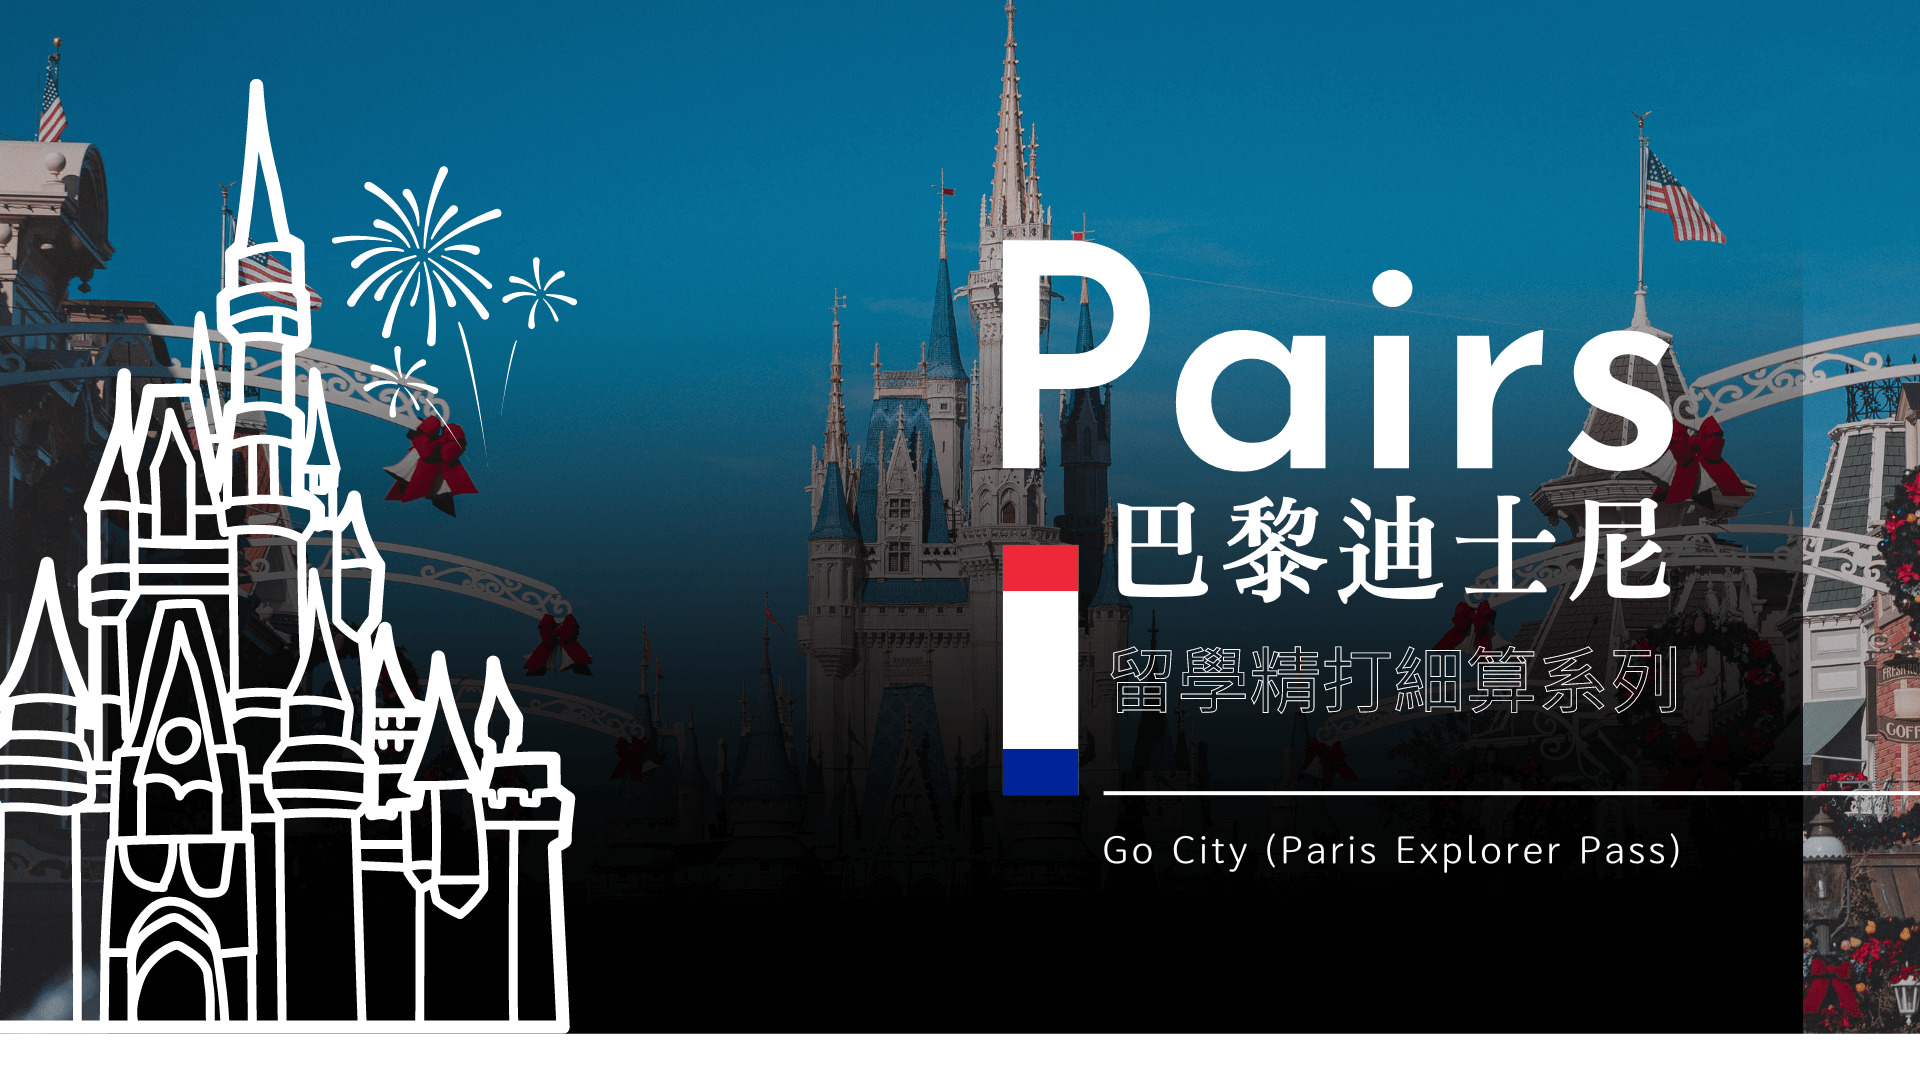 巴黎迪士尼樂園 25% OFF 暢遊 Go City Paris Pass 購票教學+心得